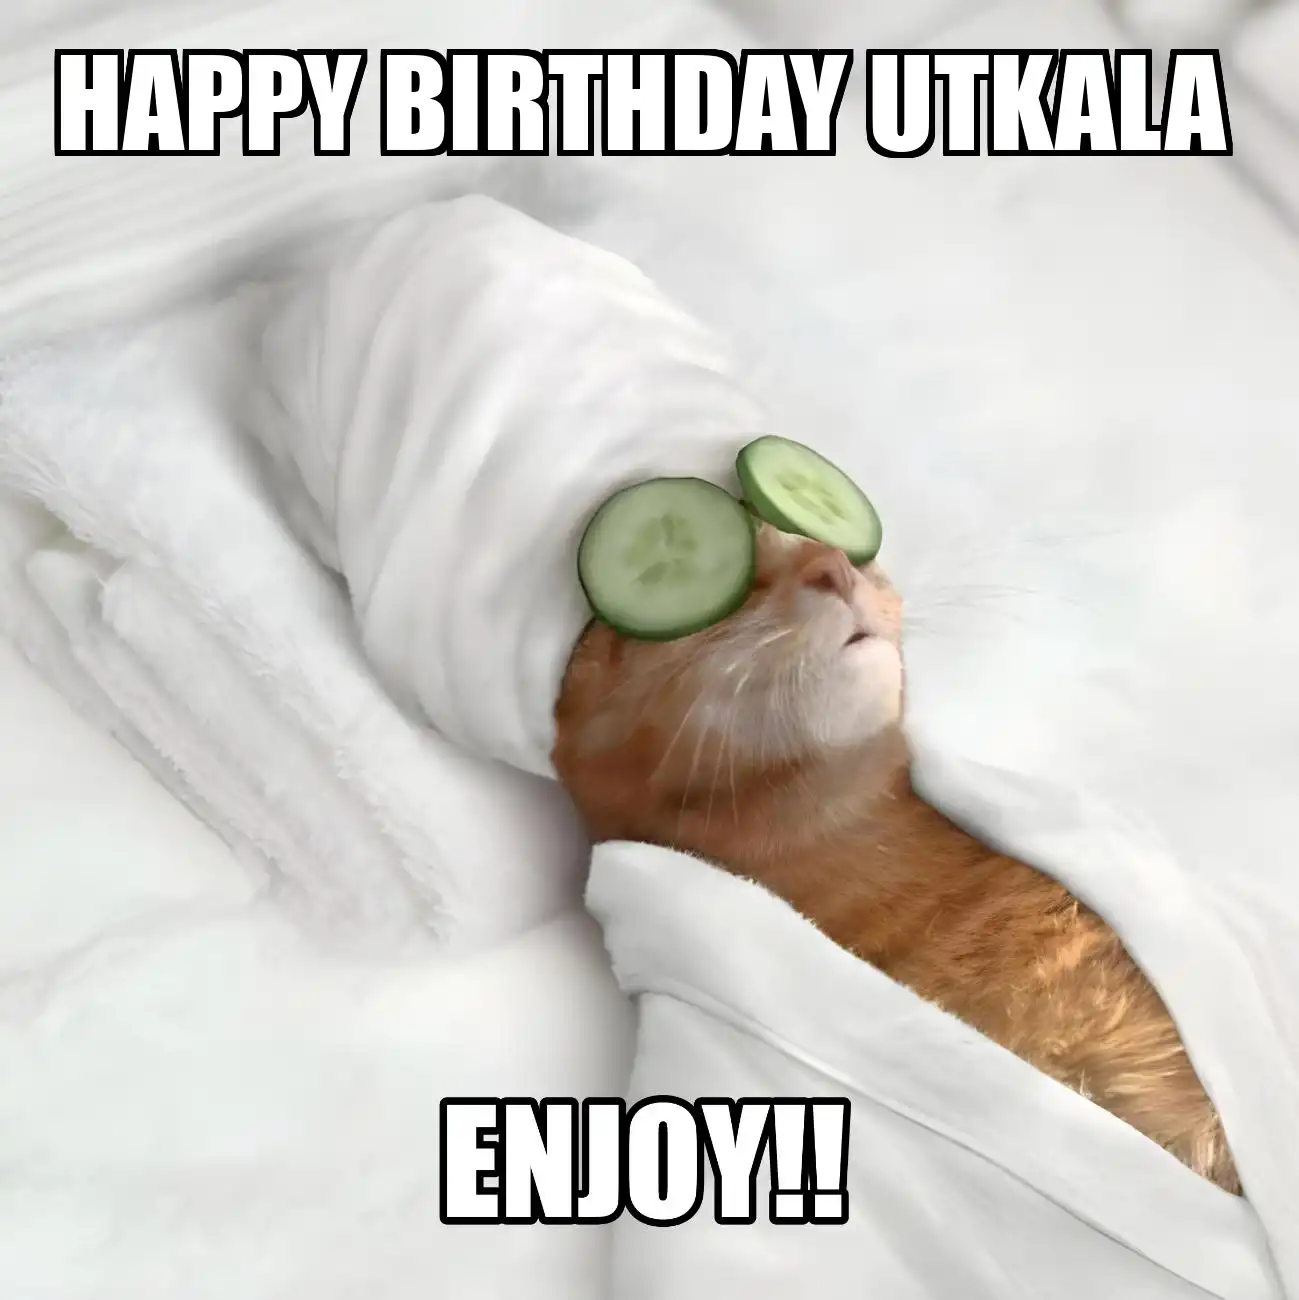 Happy Birthday Utkala Enjoy Cat Meme